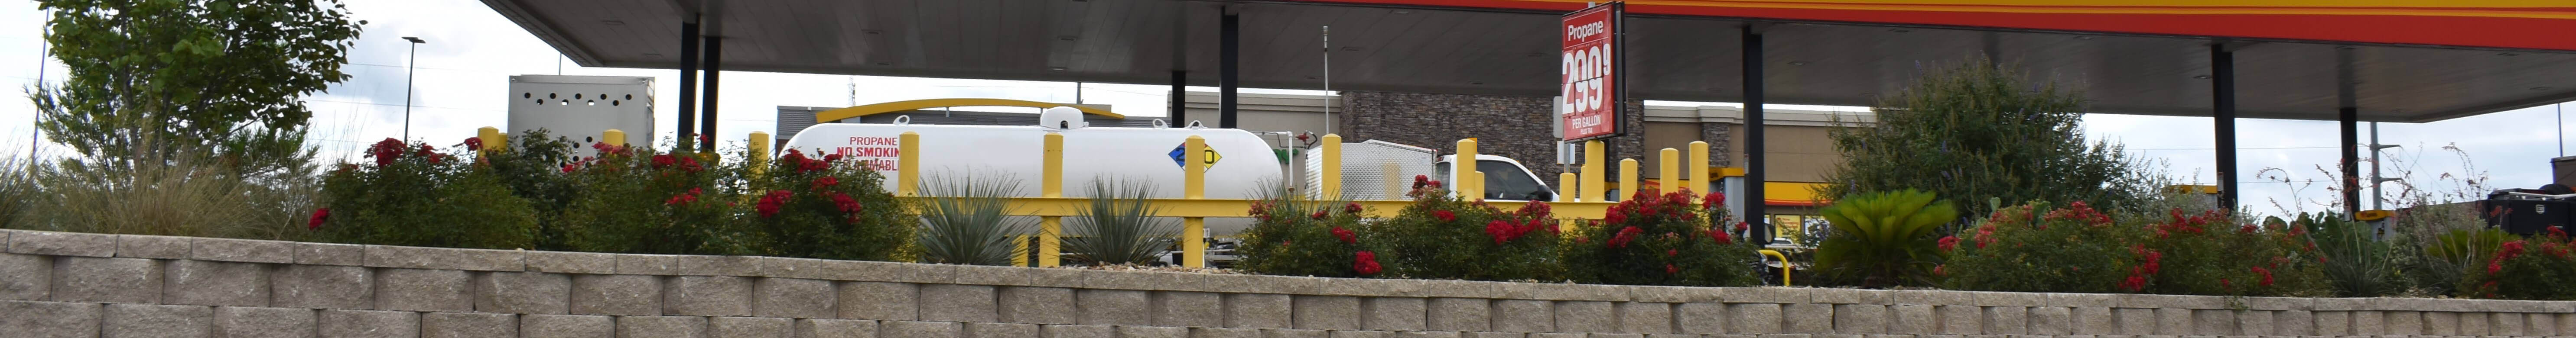 cylinder dispenser at gas station